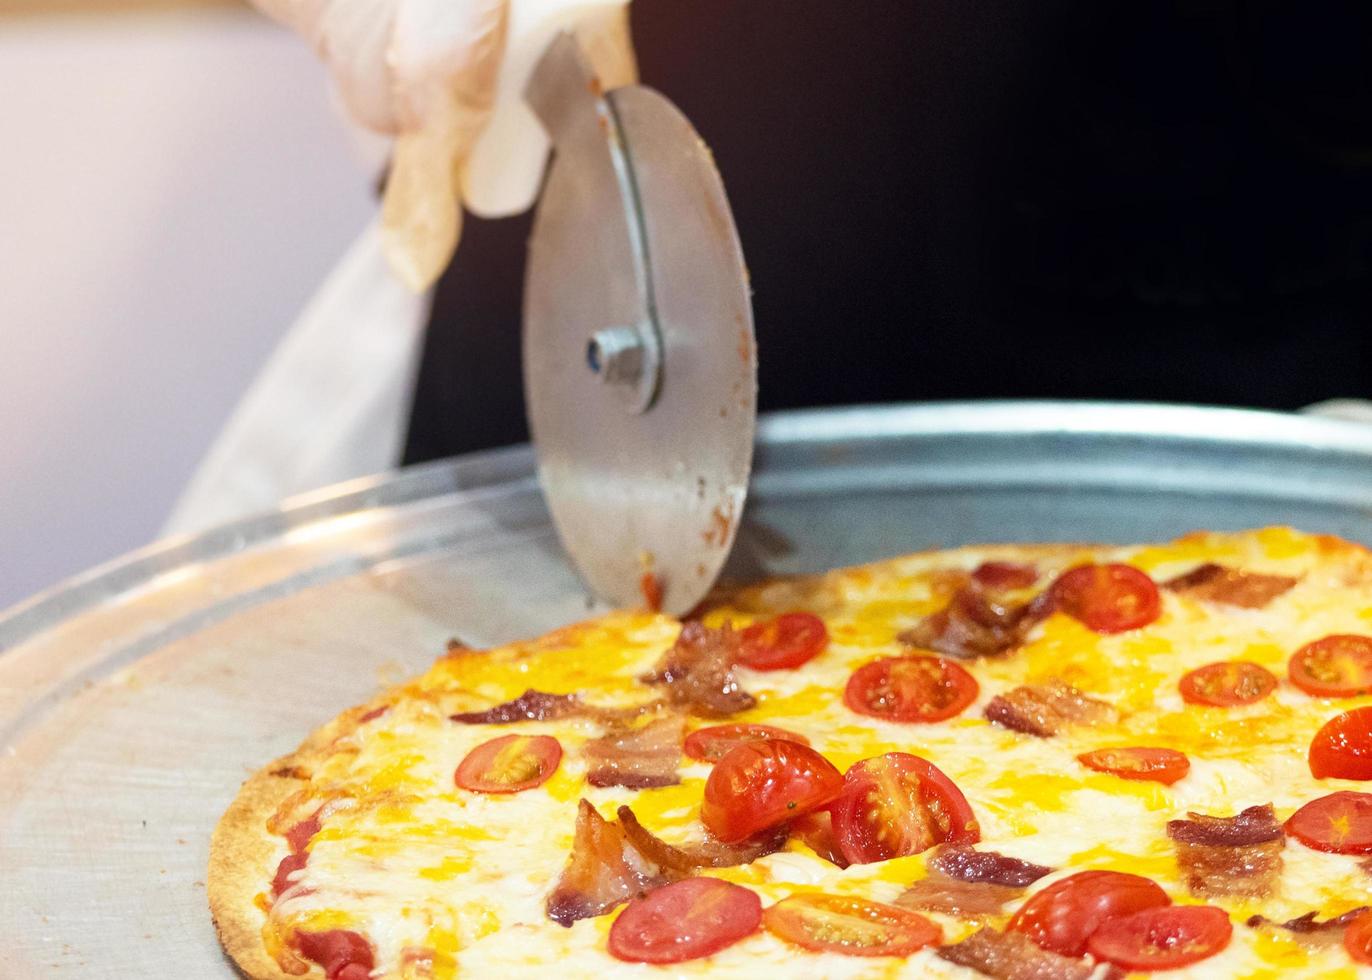 closeup mão do chef cortando pizza na cozinha foto